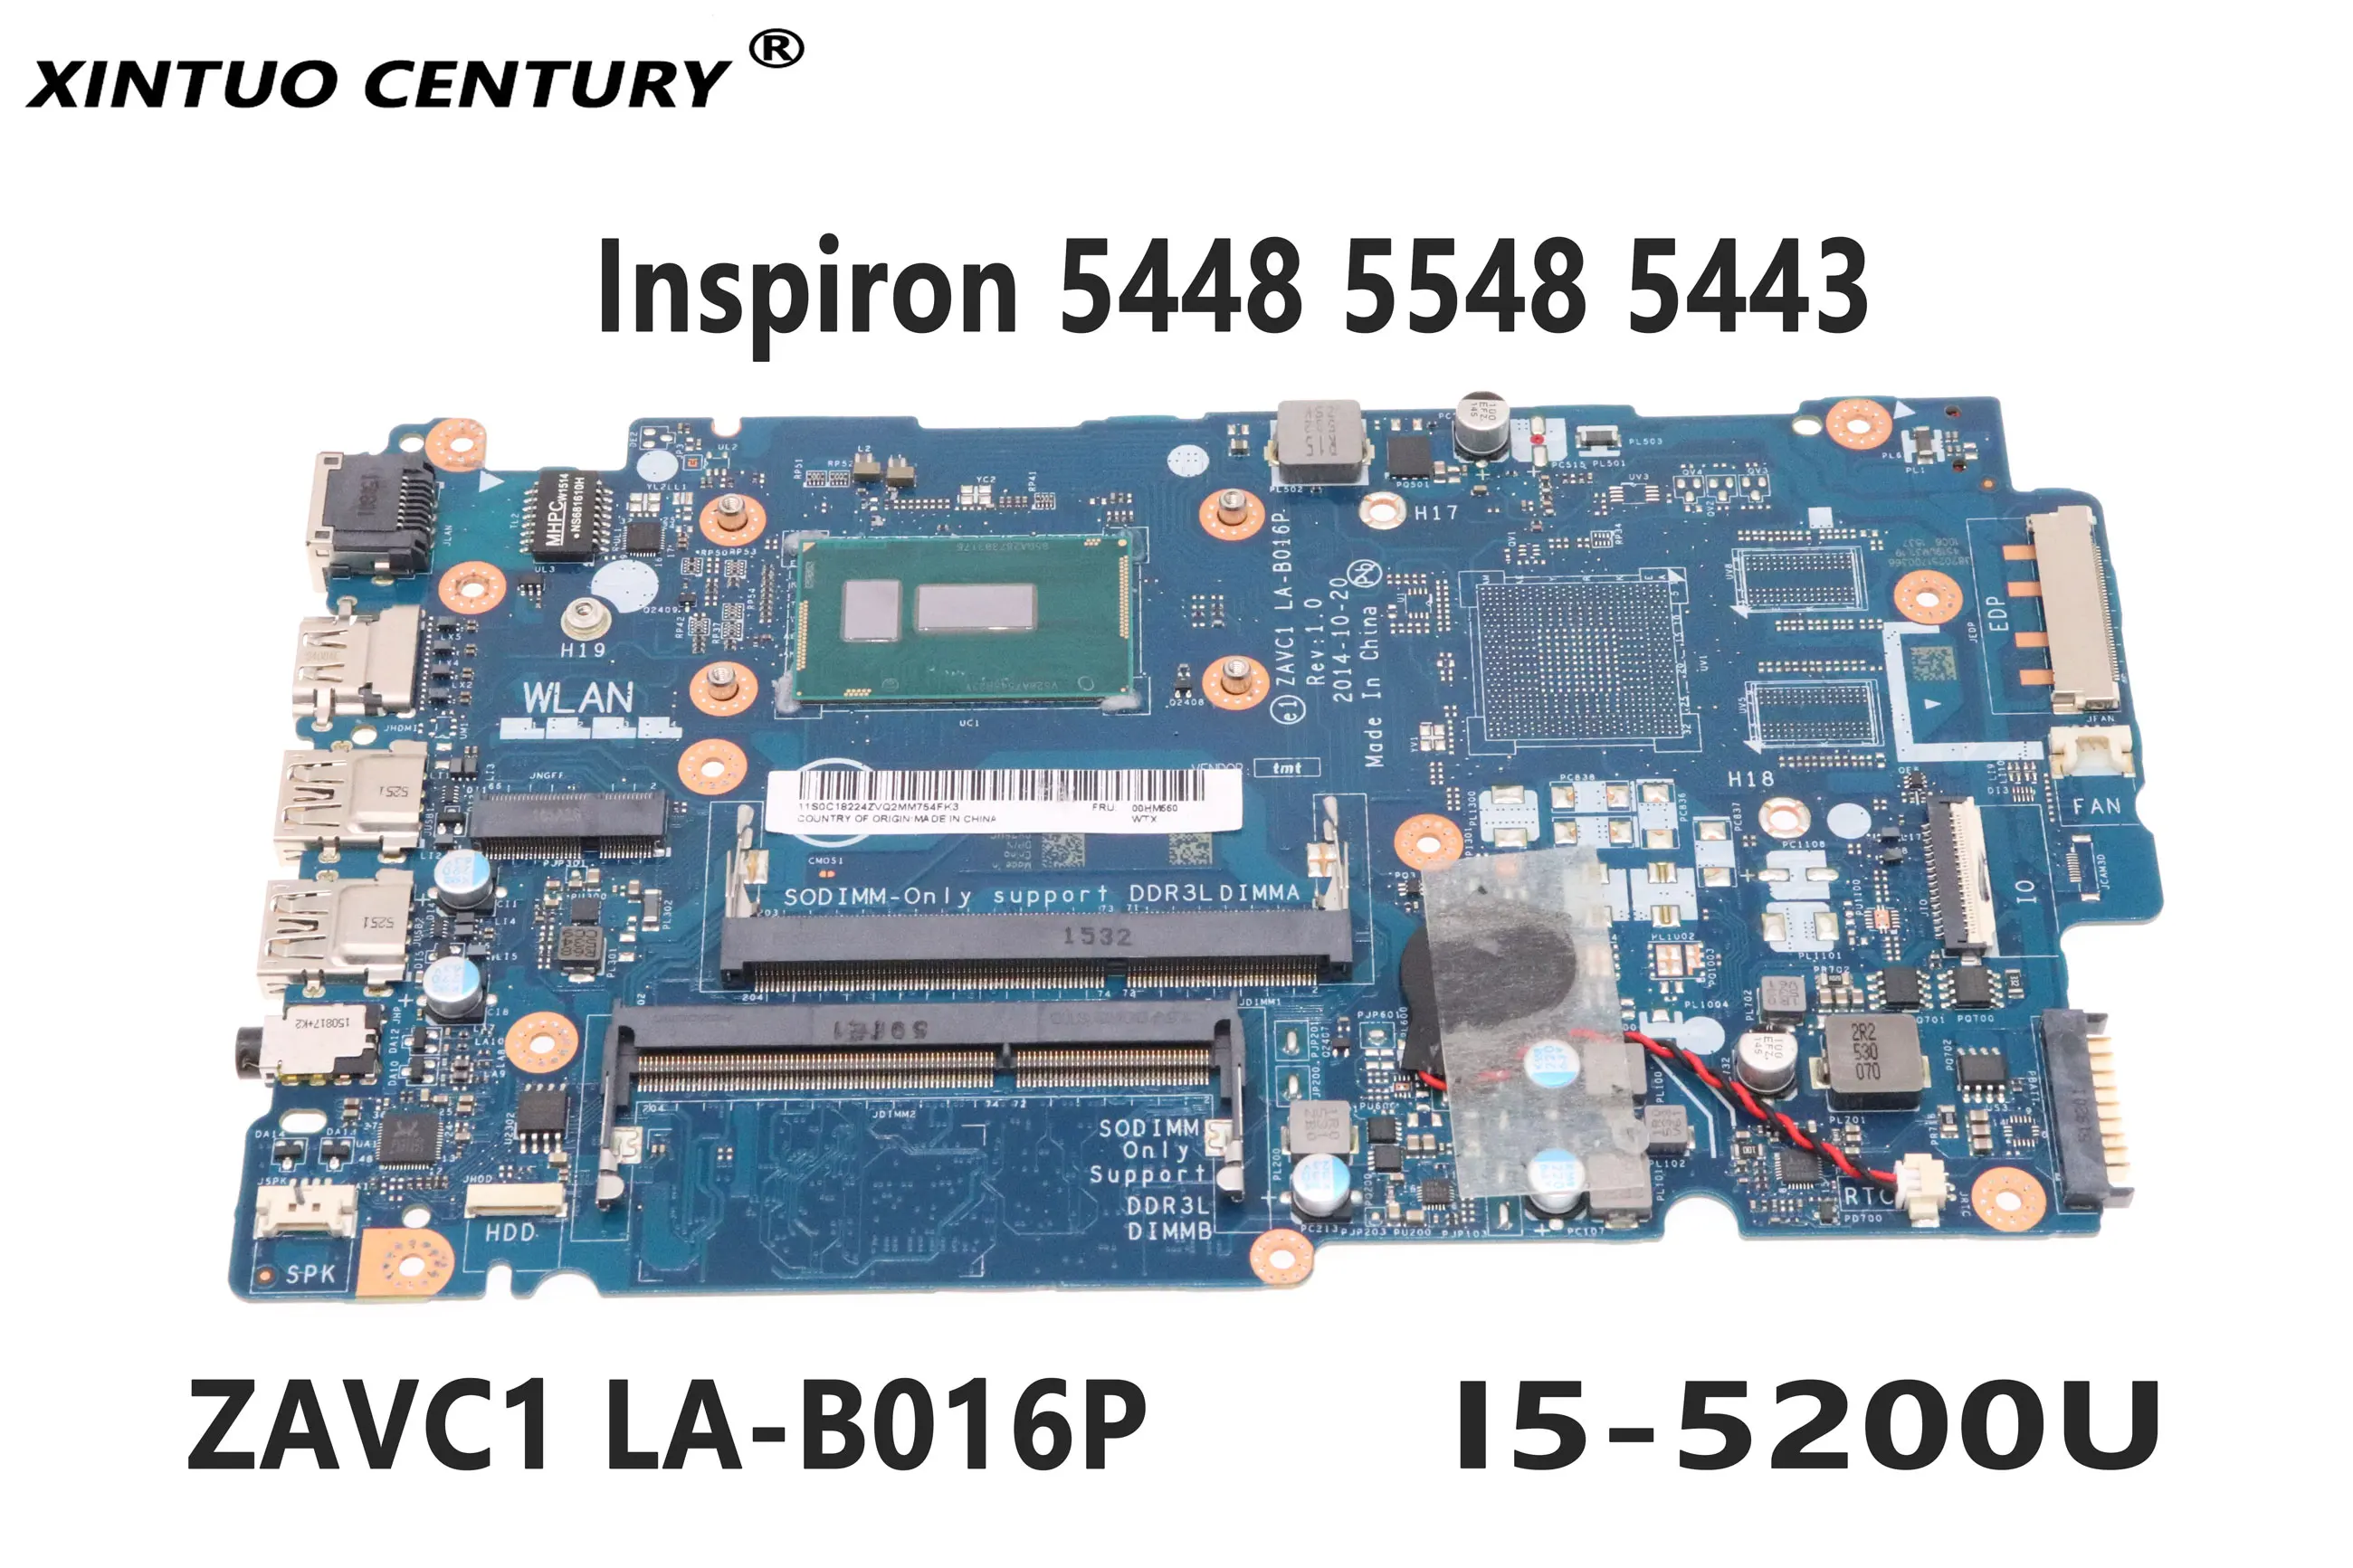 KN-0V25MC V25MC tinka Dell Ling Yue 5448 5548 5443 kompiuterio plokštę LA-B016P I5-5200U DDR3 CPU 100% bandymo darbai